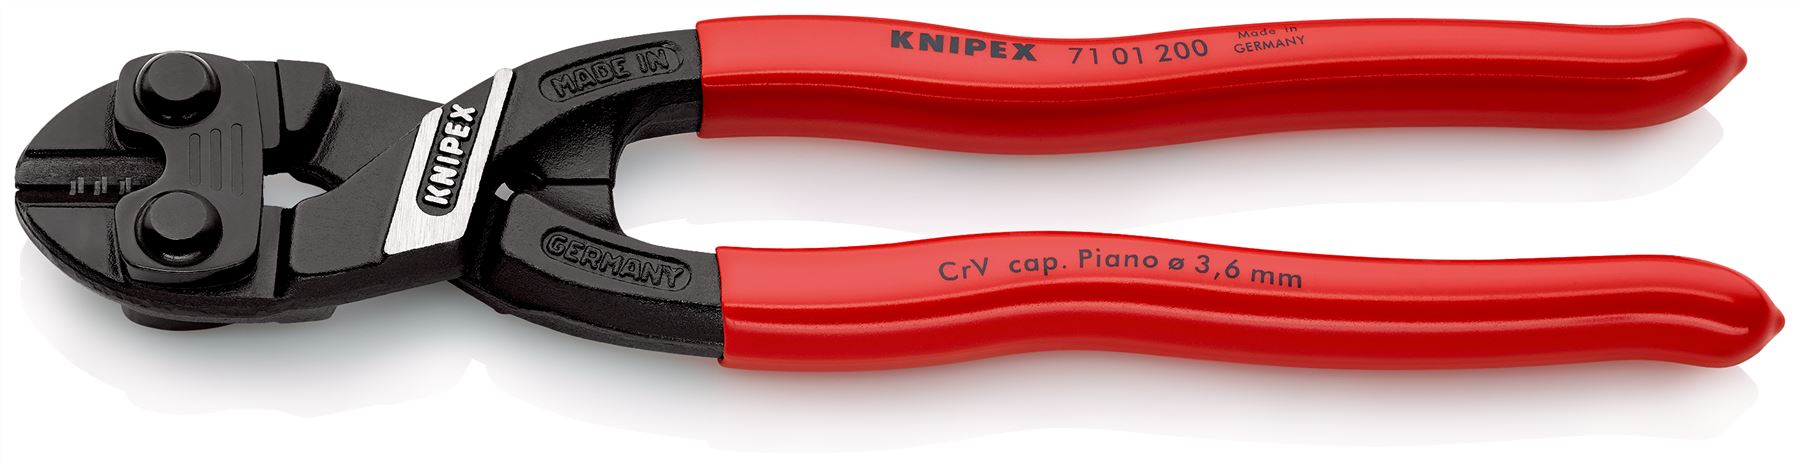 Knipex CoBolt Compact Bolt Cutter 200mm 71 01 200